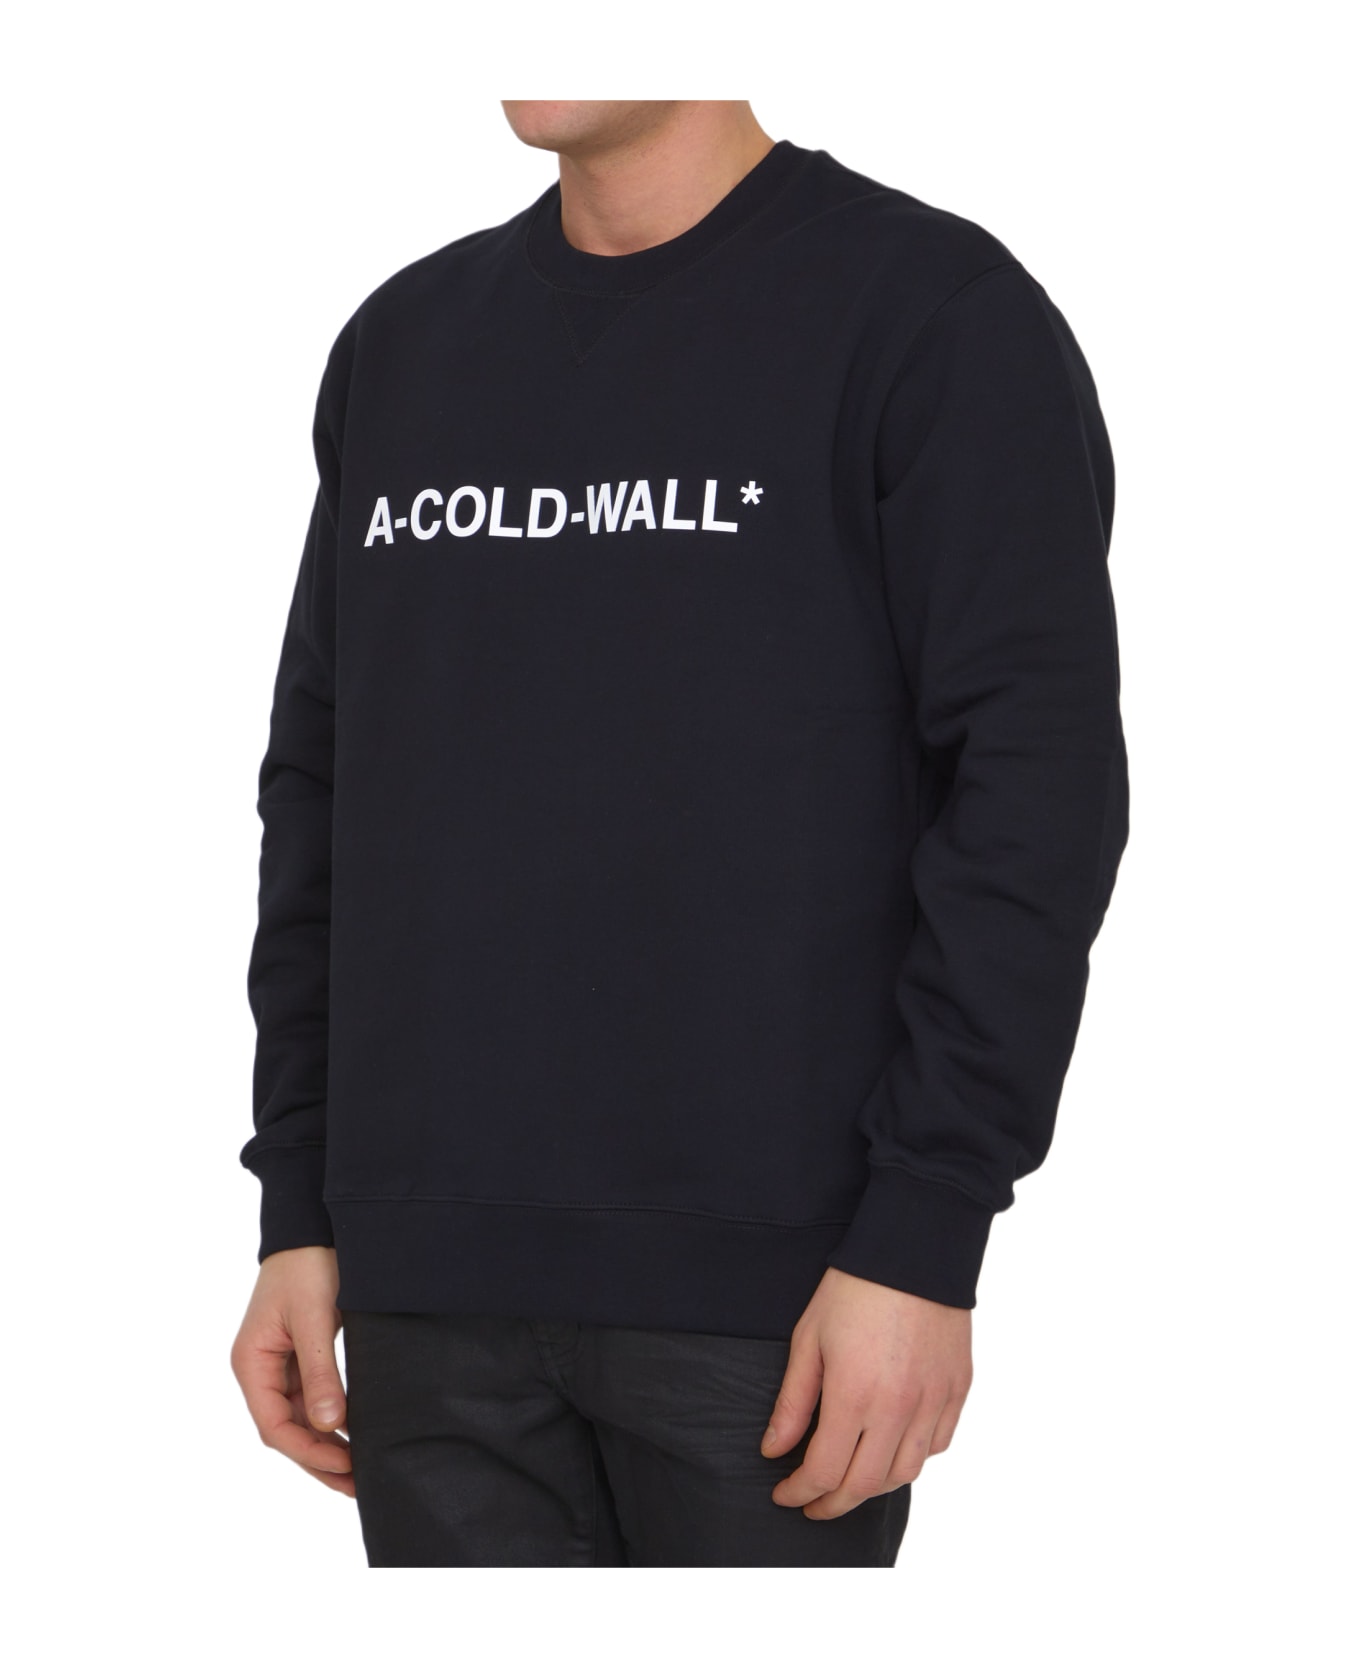 A-COLD-WALL Essential Logo Sweatshirt - BLACK